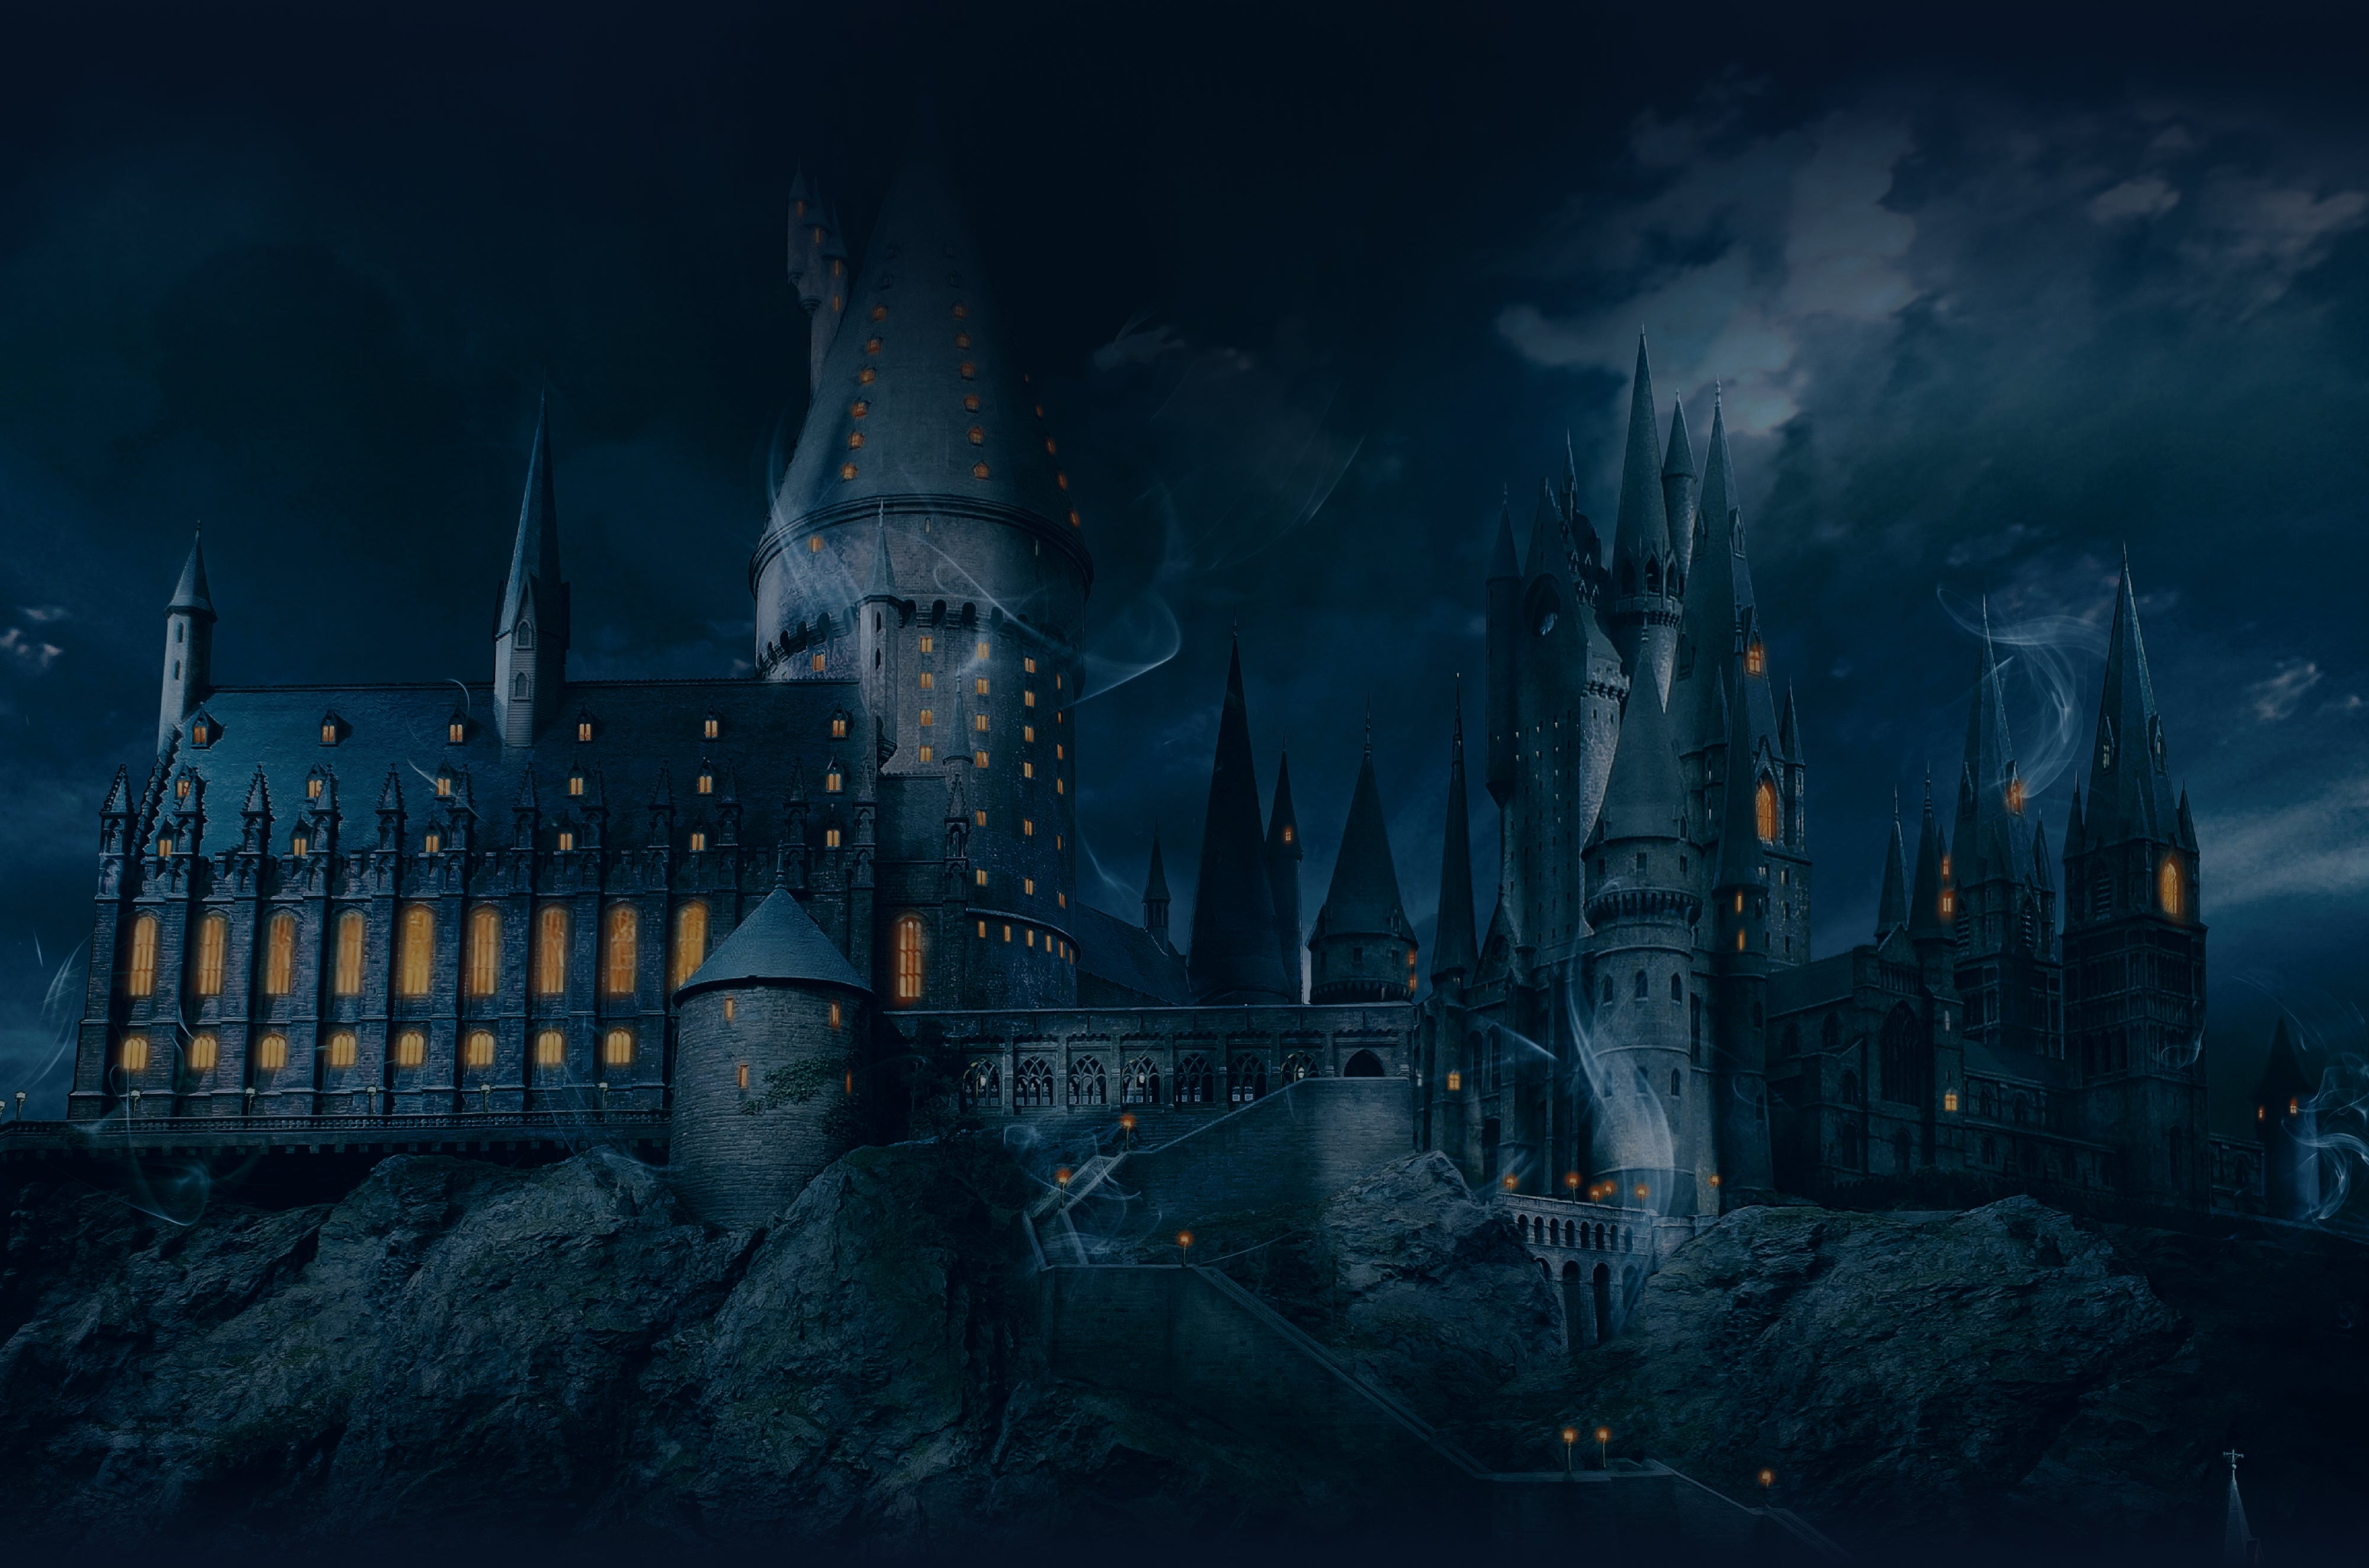 Harry Potter: Serpentard - Cartes à Jouer Theory 11 - LilloJEUX